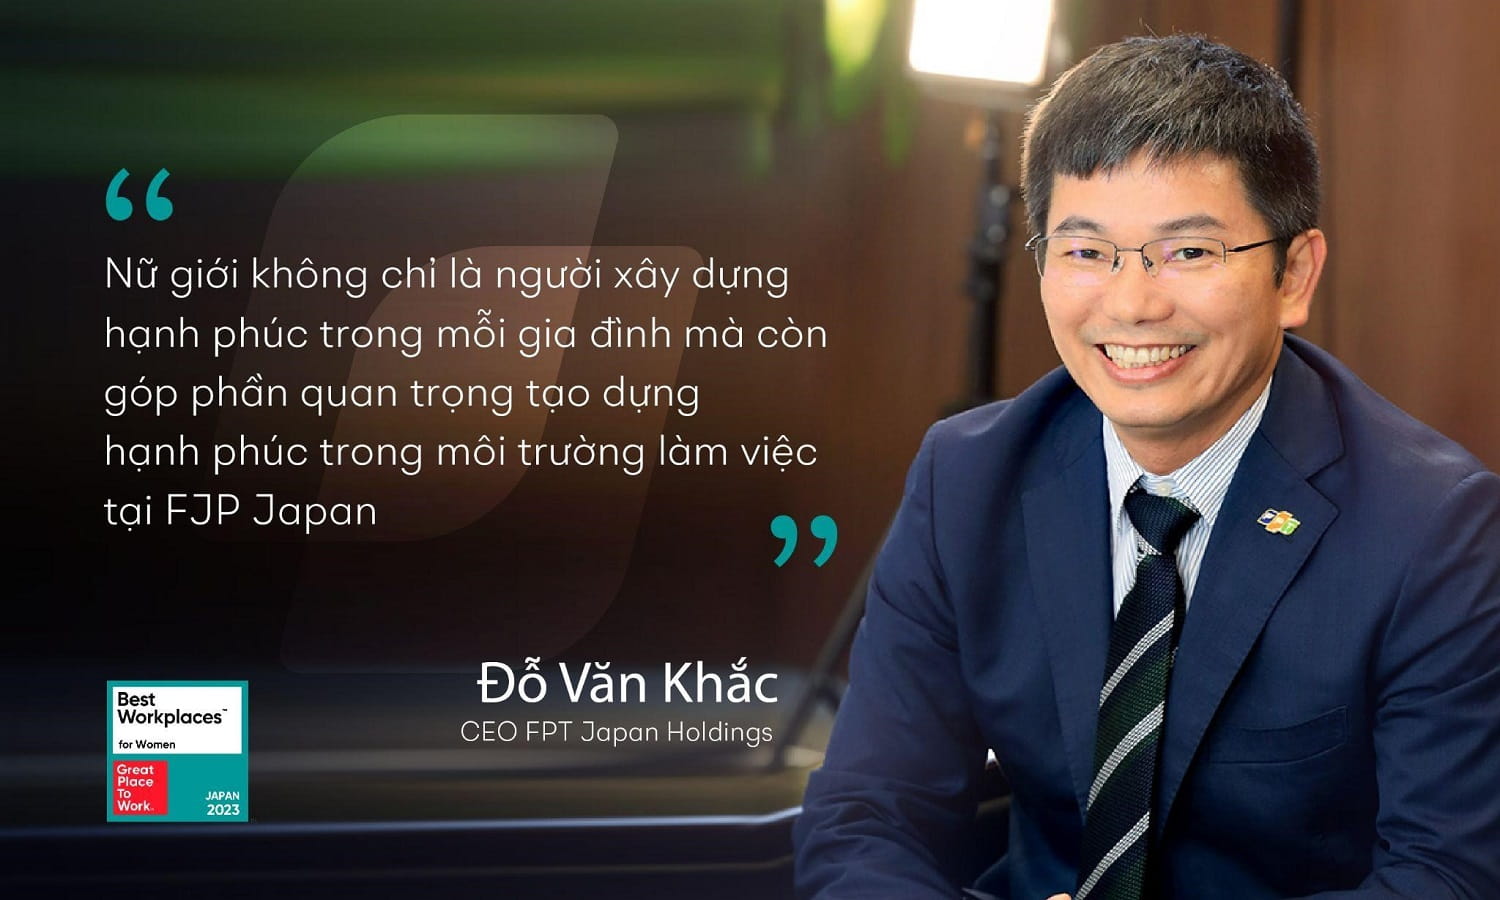 Mr. Do Van Khac, CEO of FPT Japan Holdings